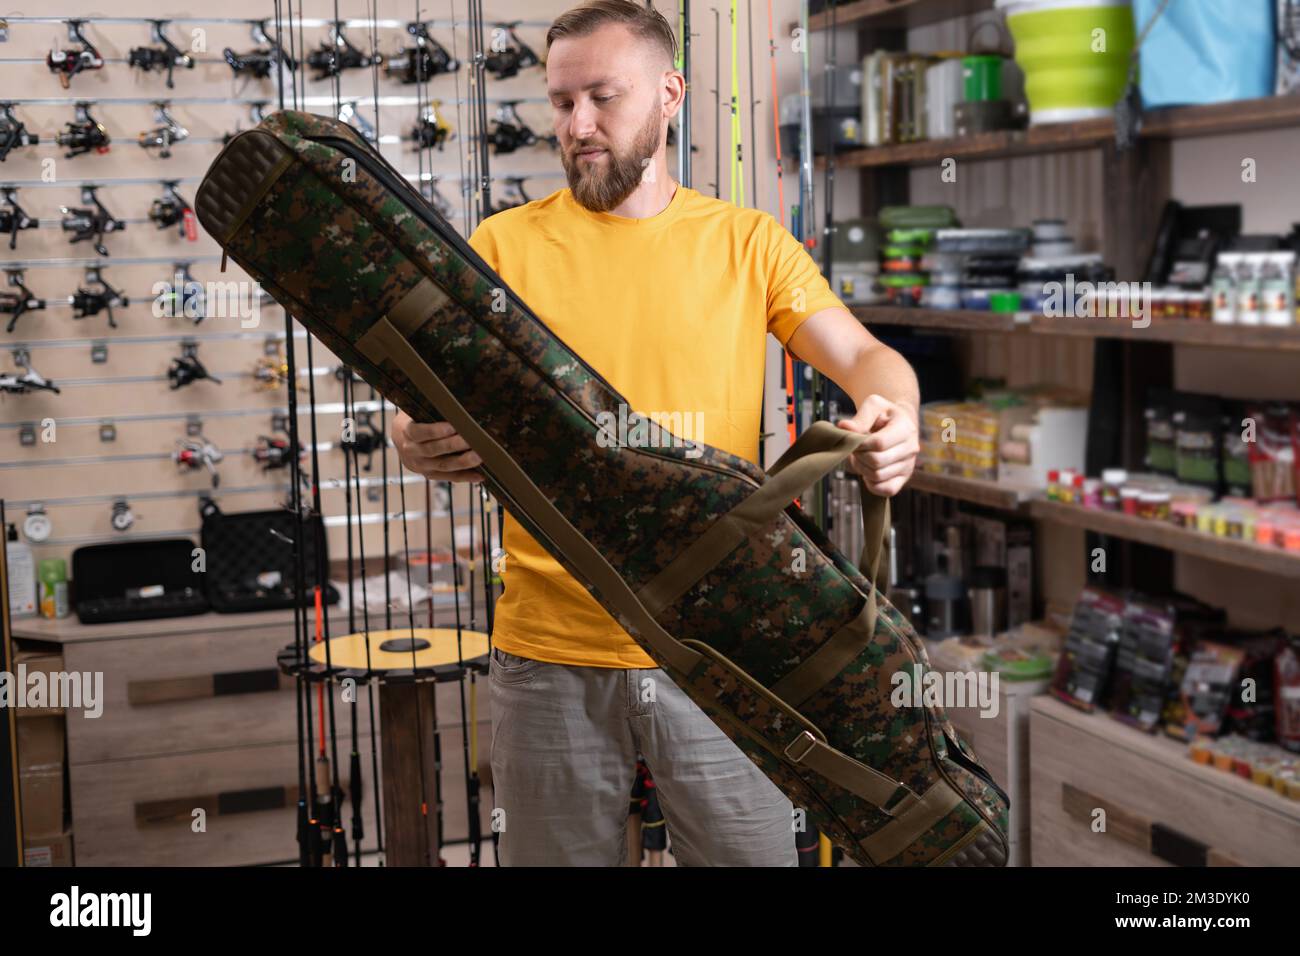 Un homme qui choisit un étui pour canne à pêche dans une boutique de sport. copier l'espace Banque D'Images